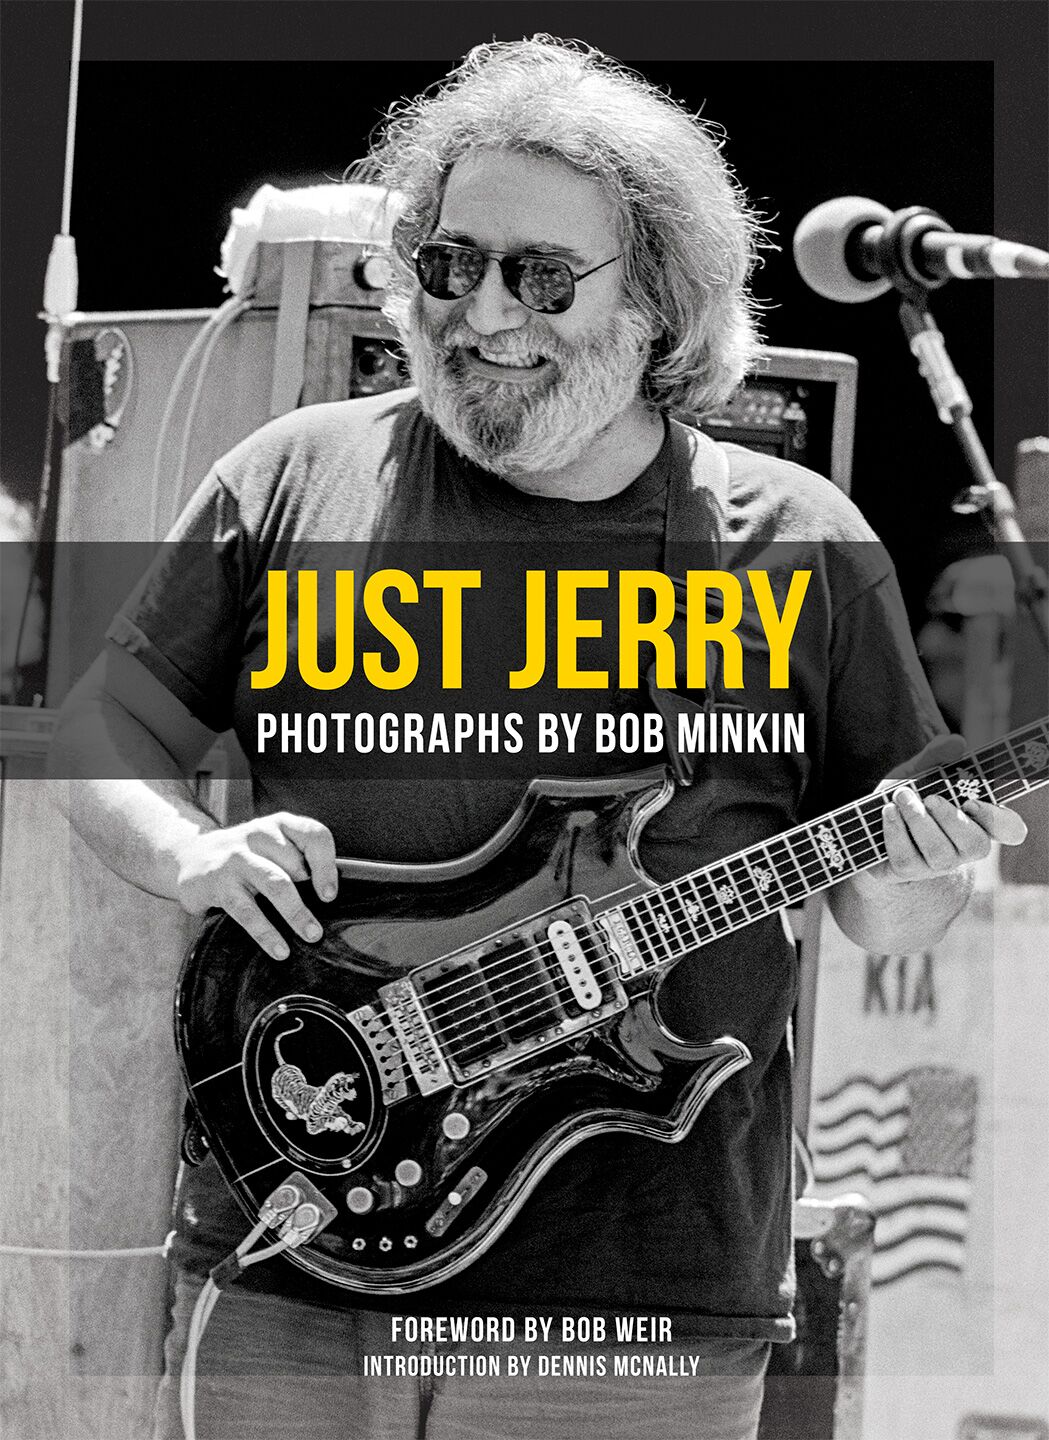 "Just Jerry" - by Bob Minkin